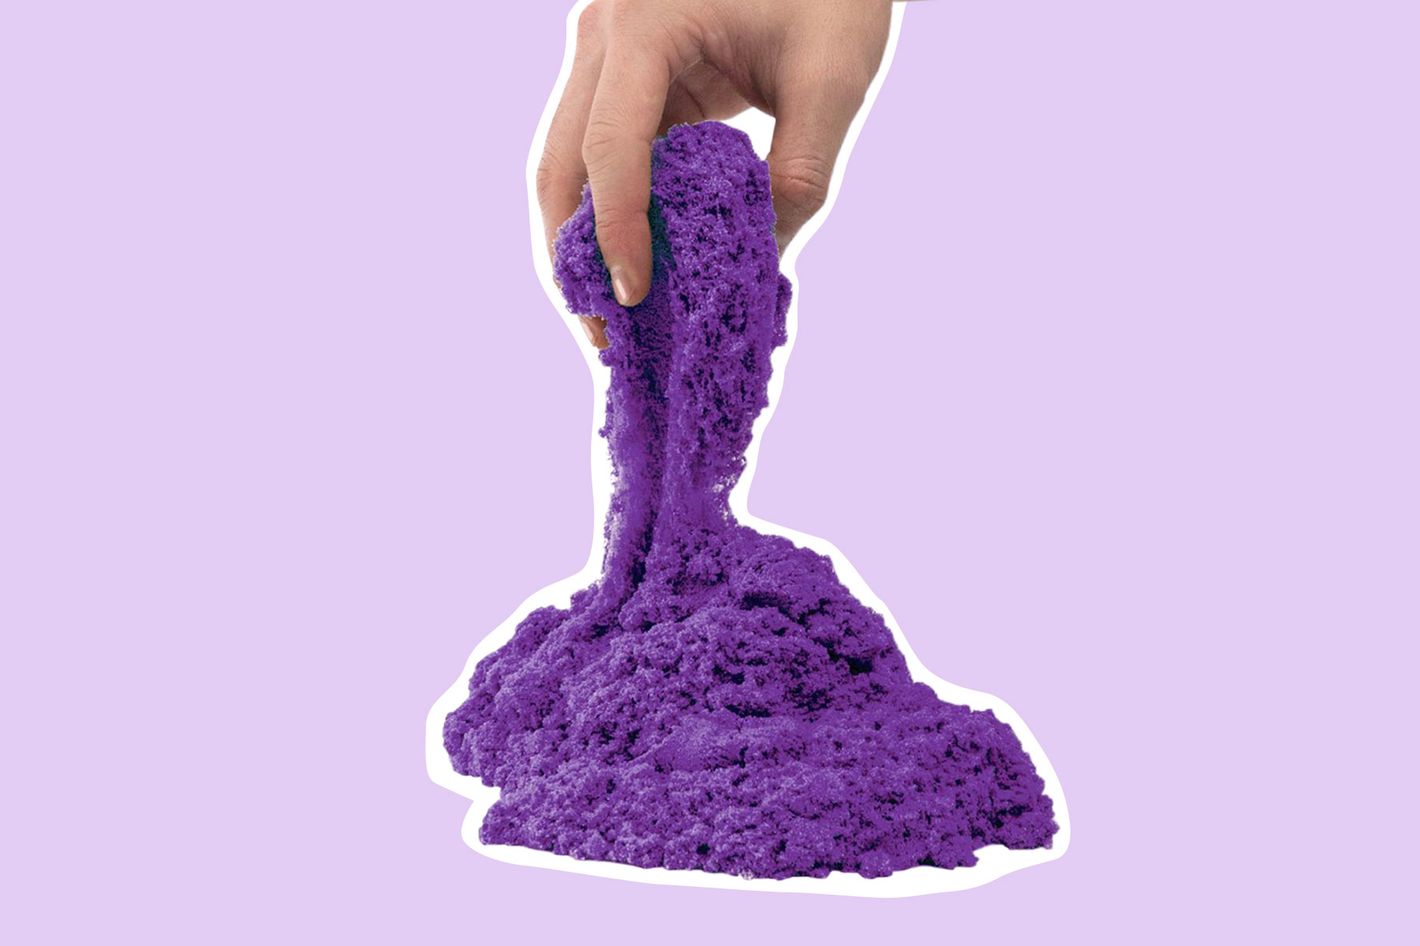 Kinetic Sand - Purple, 2 Pounds